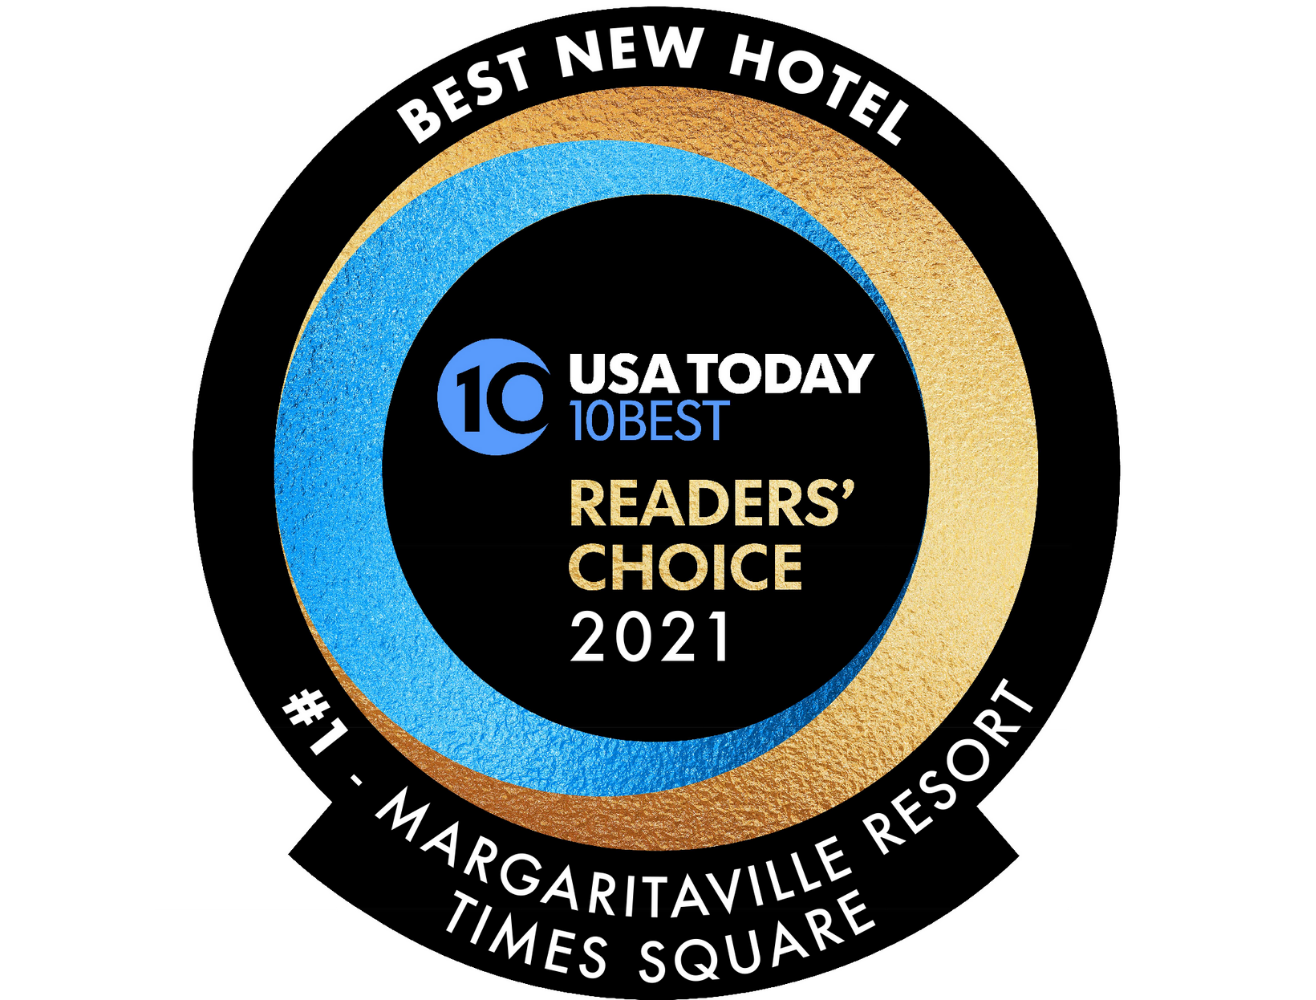 Margaritaville Resort Times Square nombrado “Mejor hotel nuevo” en los premios 10Best Readers' Choice Awards de USA Today